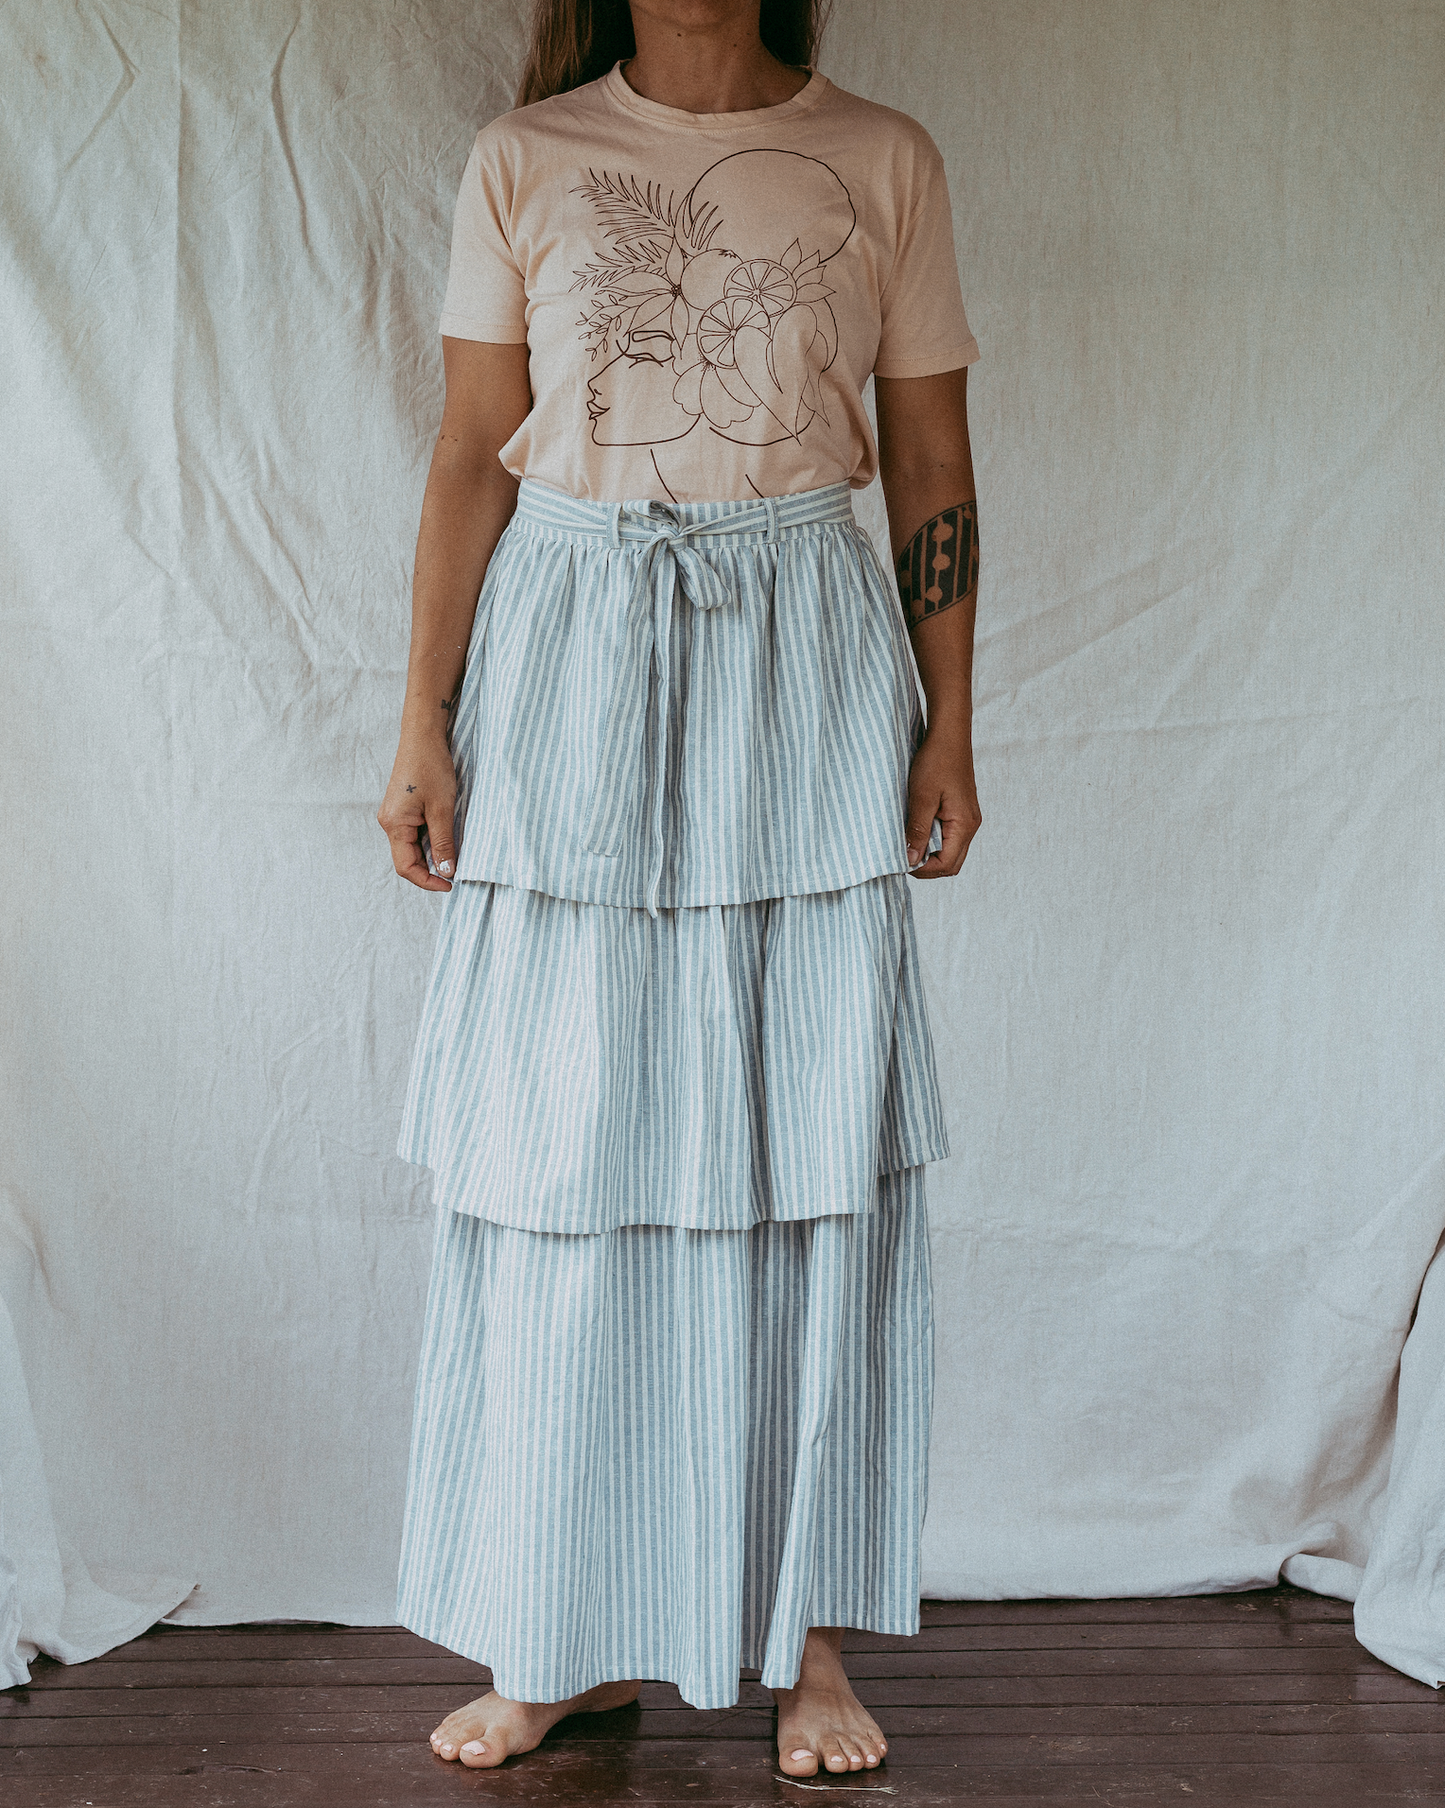 Ava Skirt - Stripe Linen